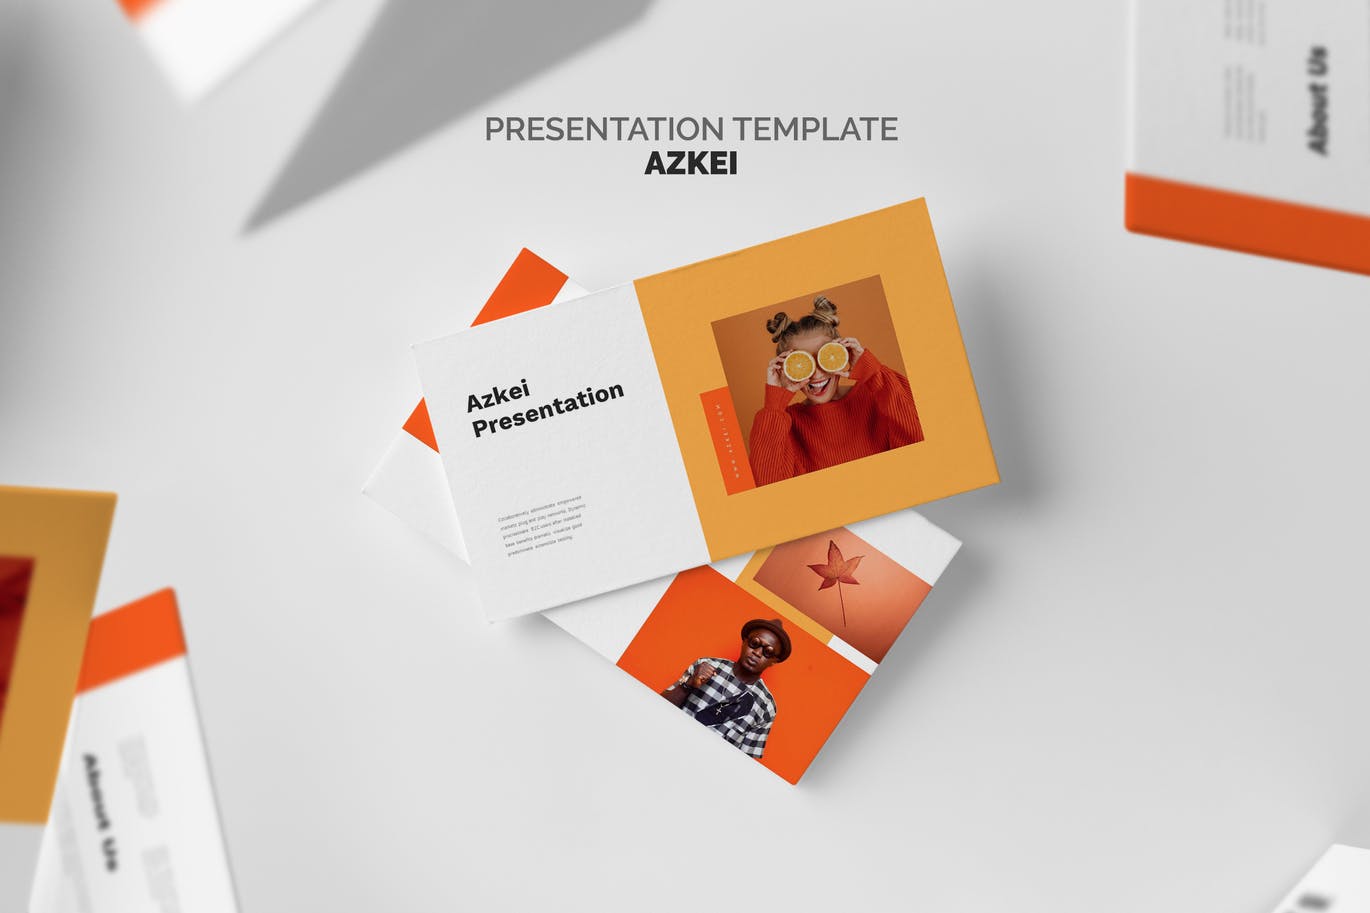 时尚创意橙色主题PPT幻灯片模板免费下载